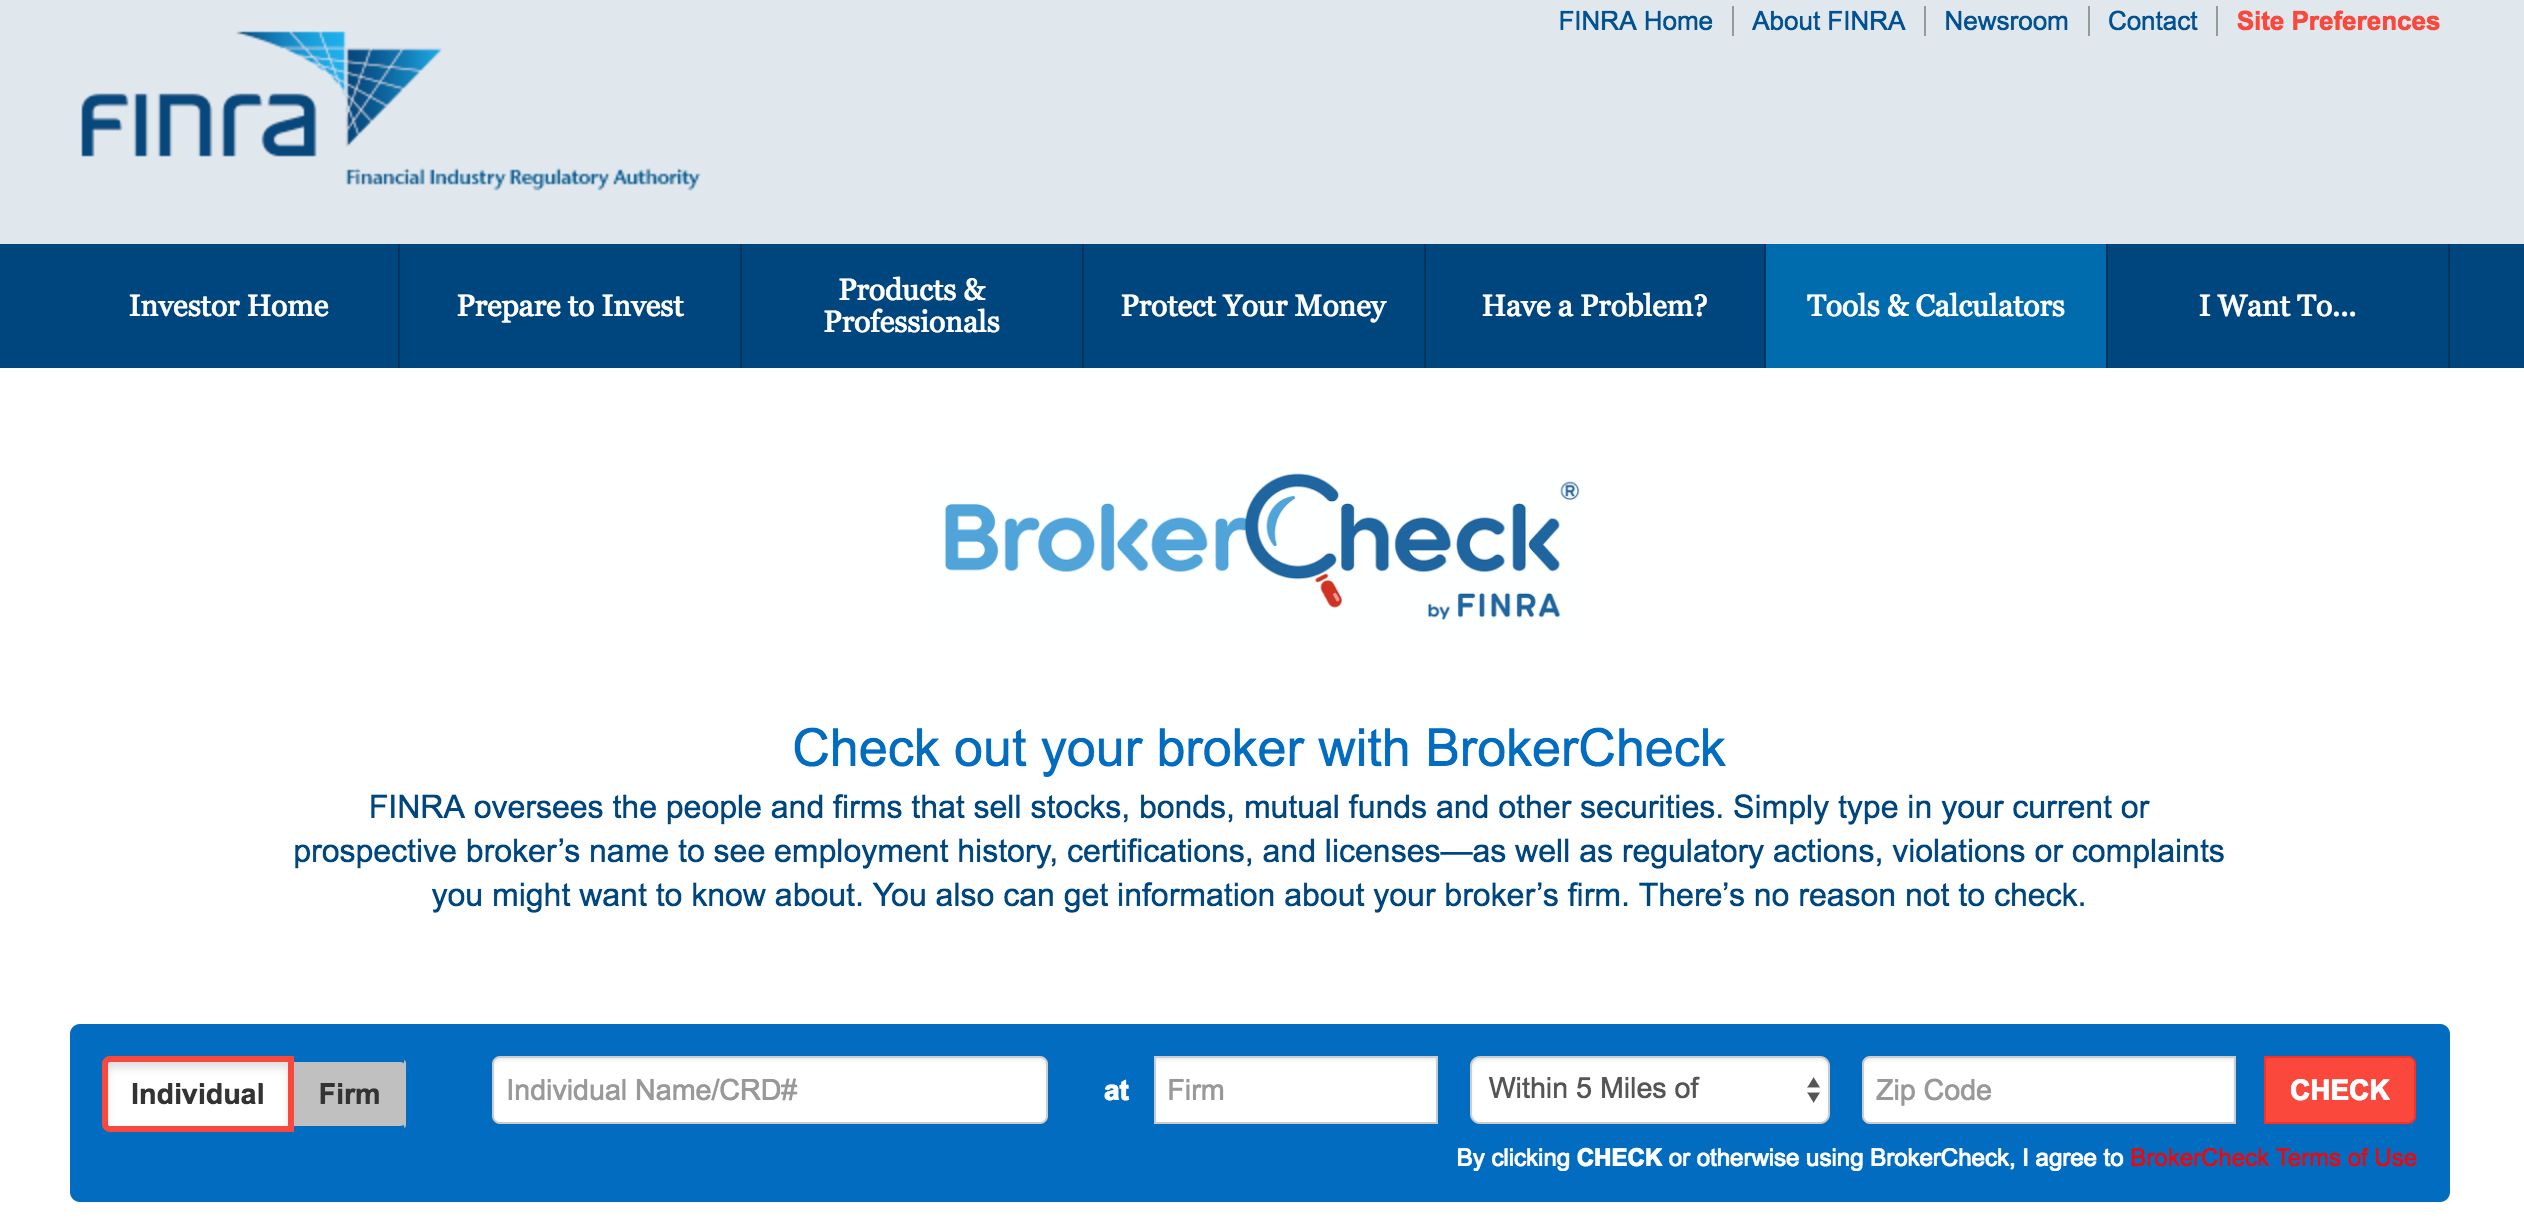 How do you use FINRA BrokerCheck?